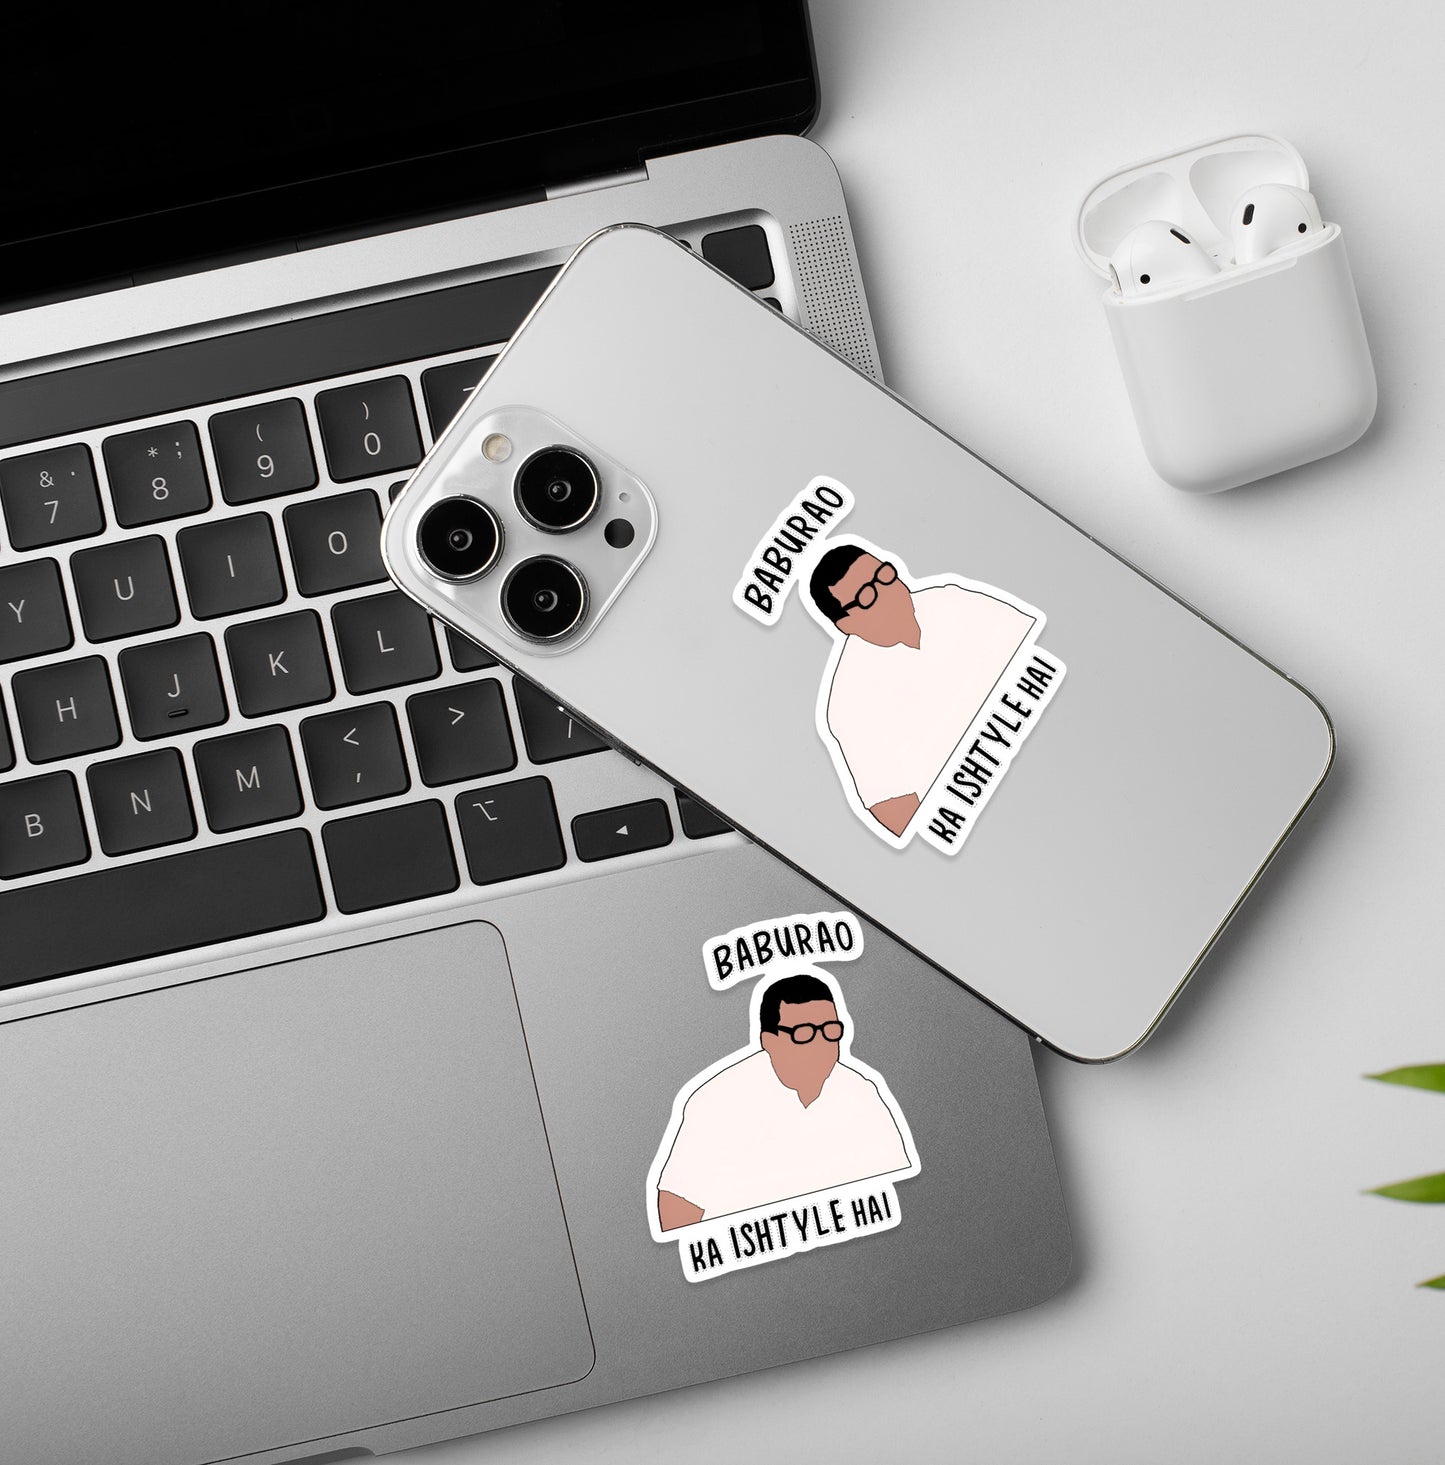 Baburao Ka Ishtyle | Laptop & Phone Sticker